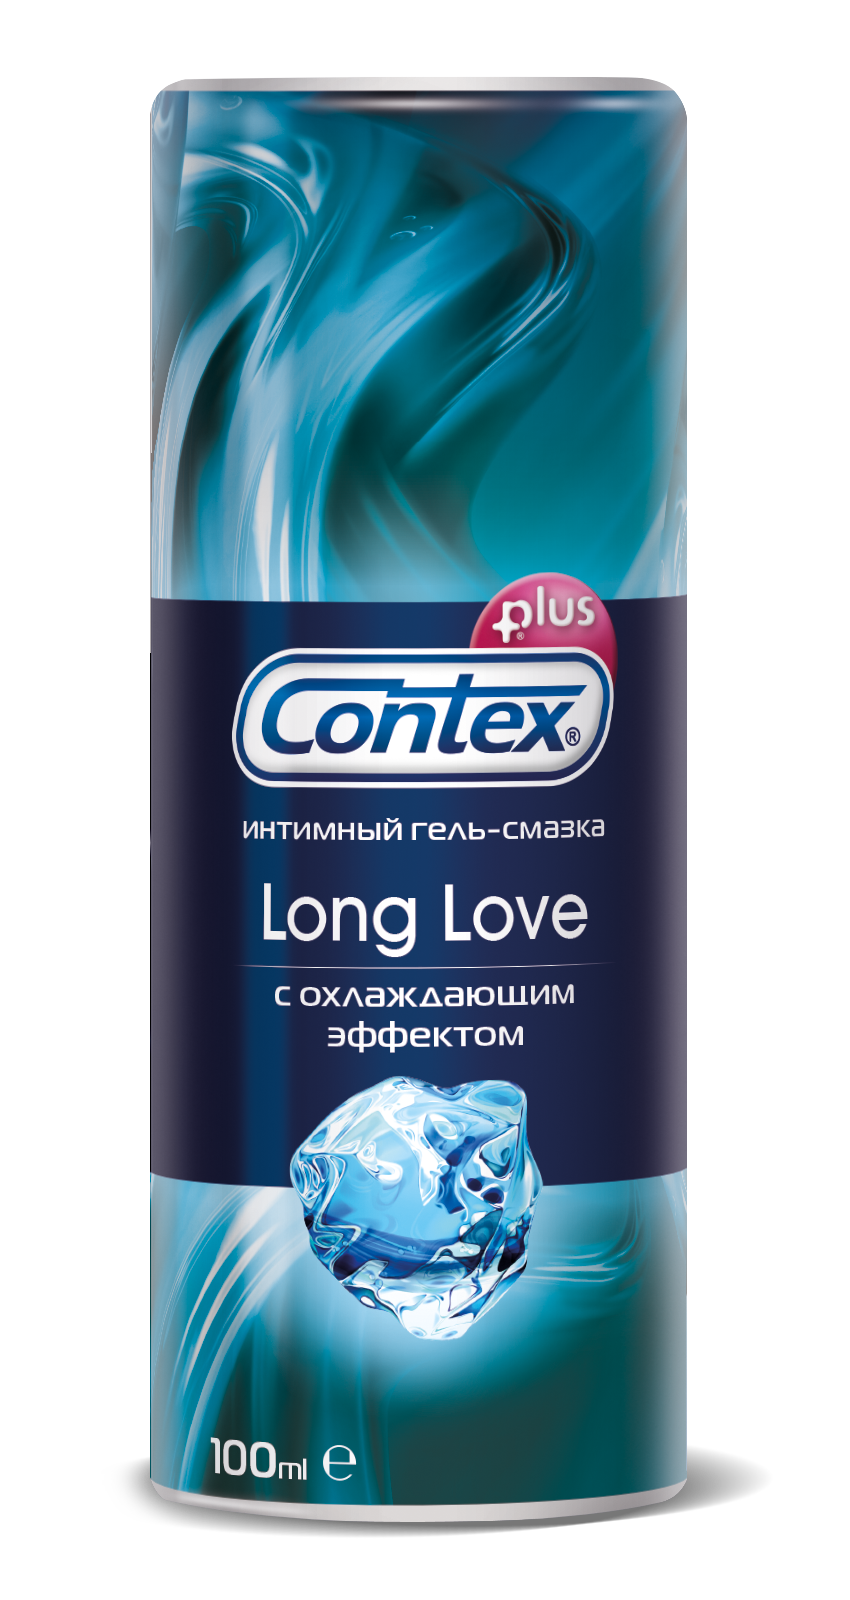 Гель-смазка Contex Long Love 100мл с охлаждающим эффектом